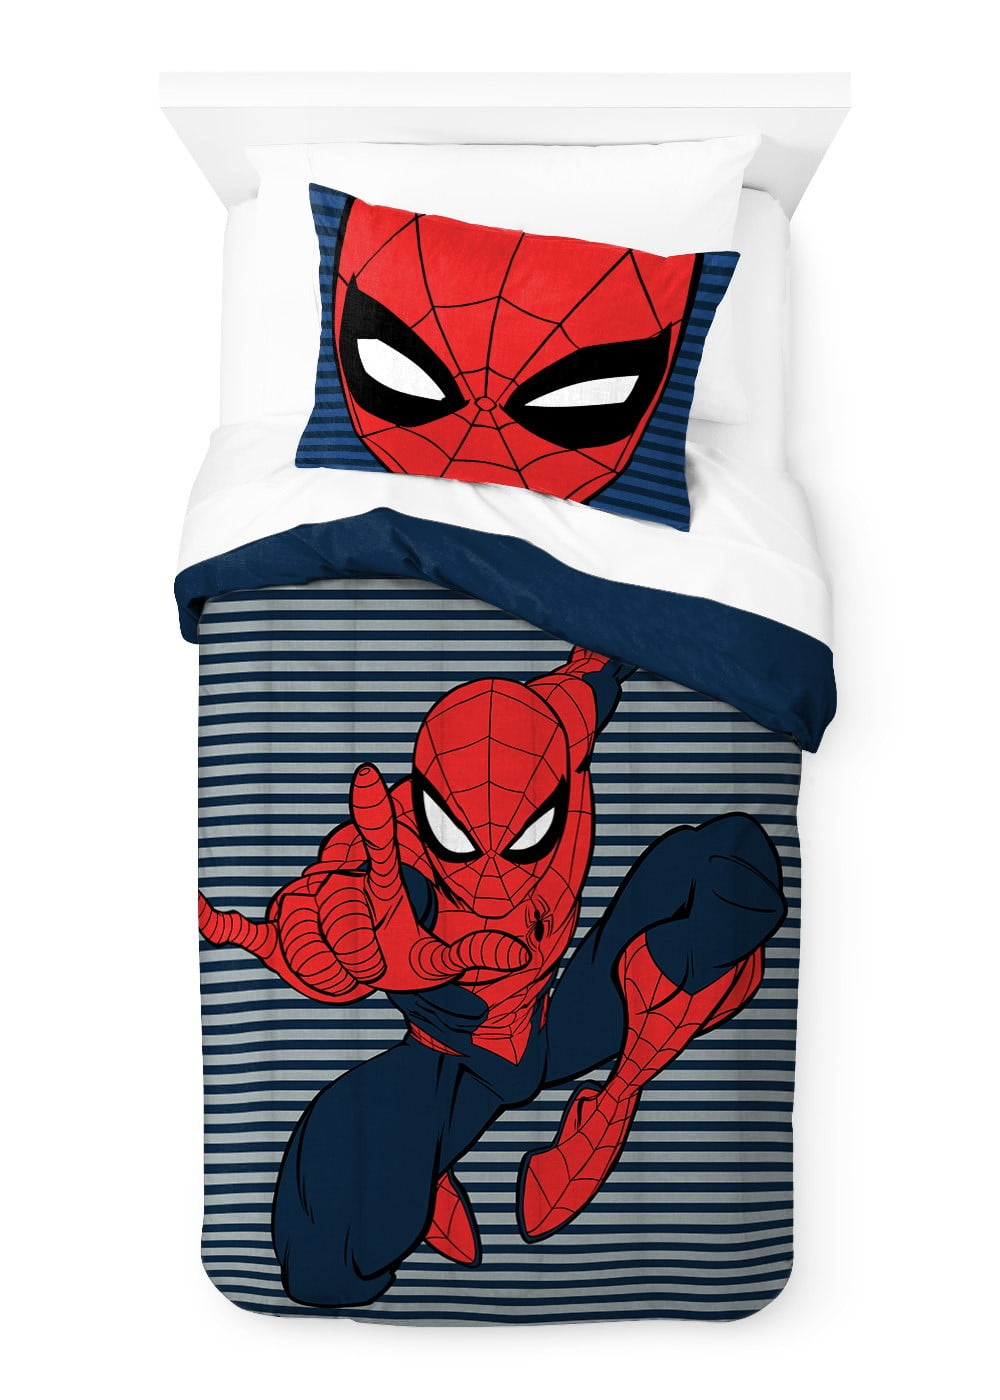 2-piece Spider-Man Costume Set - Red/Spider-Man - Kids